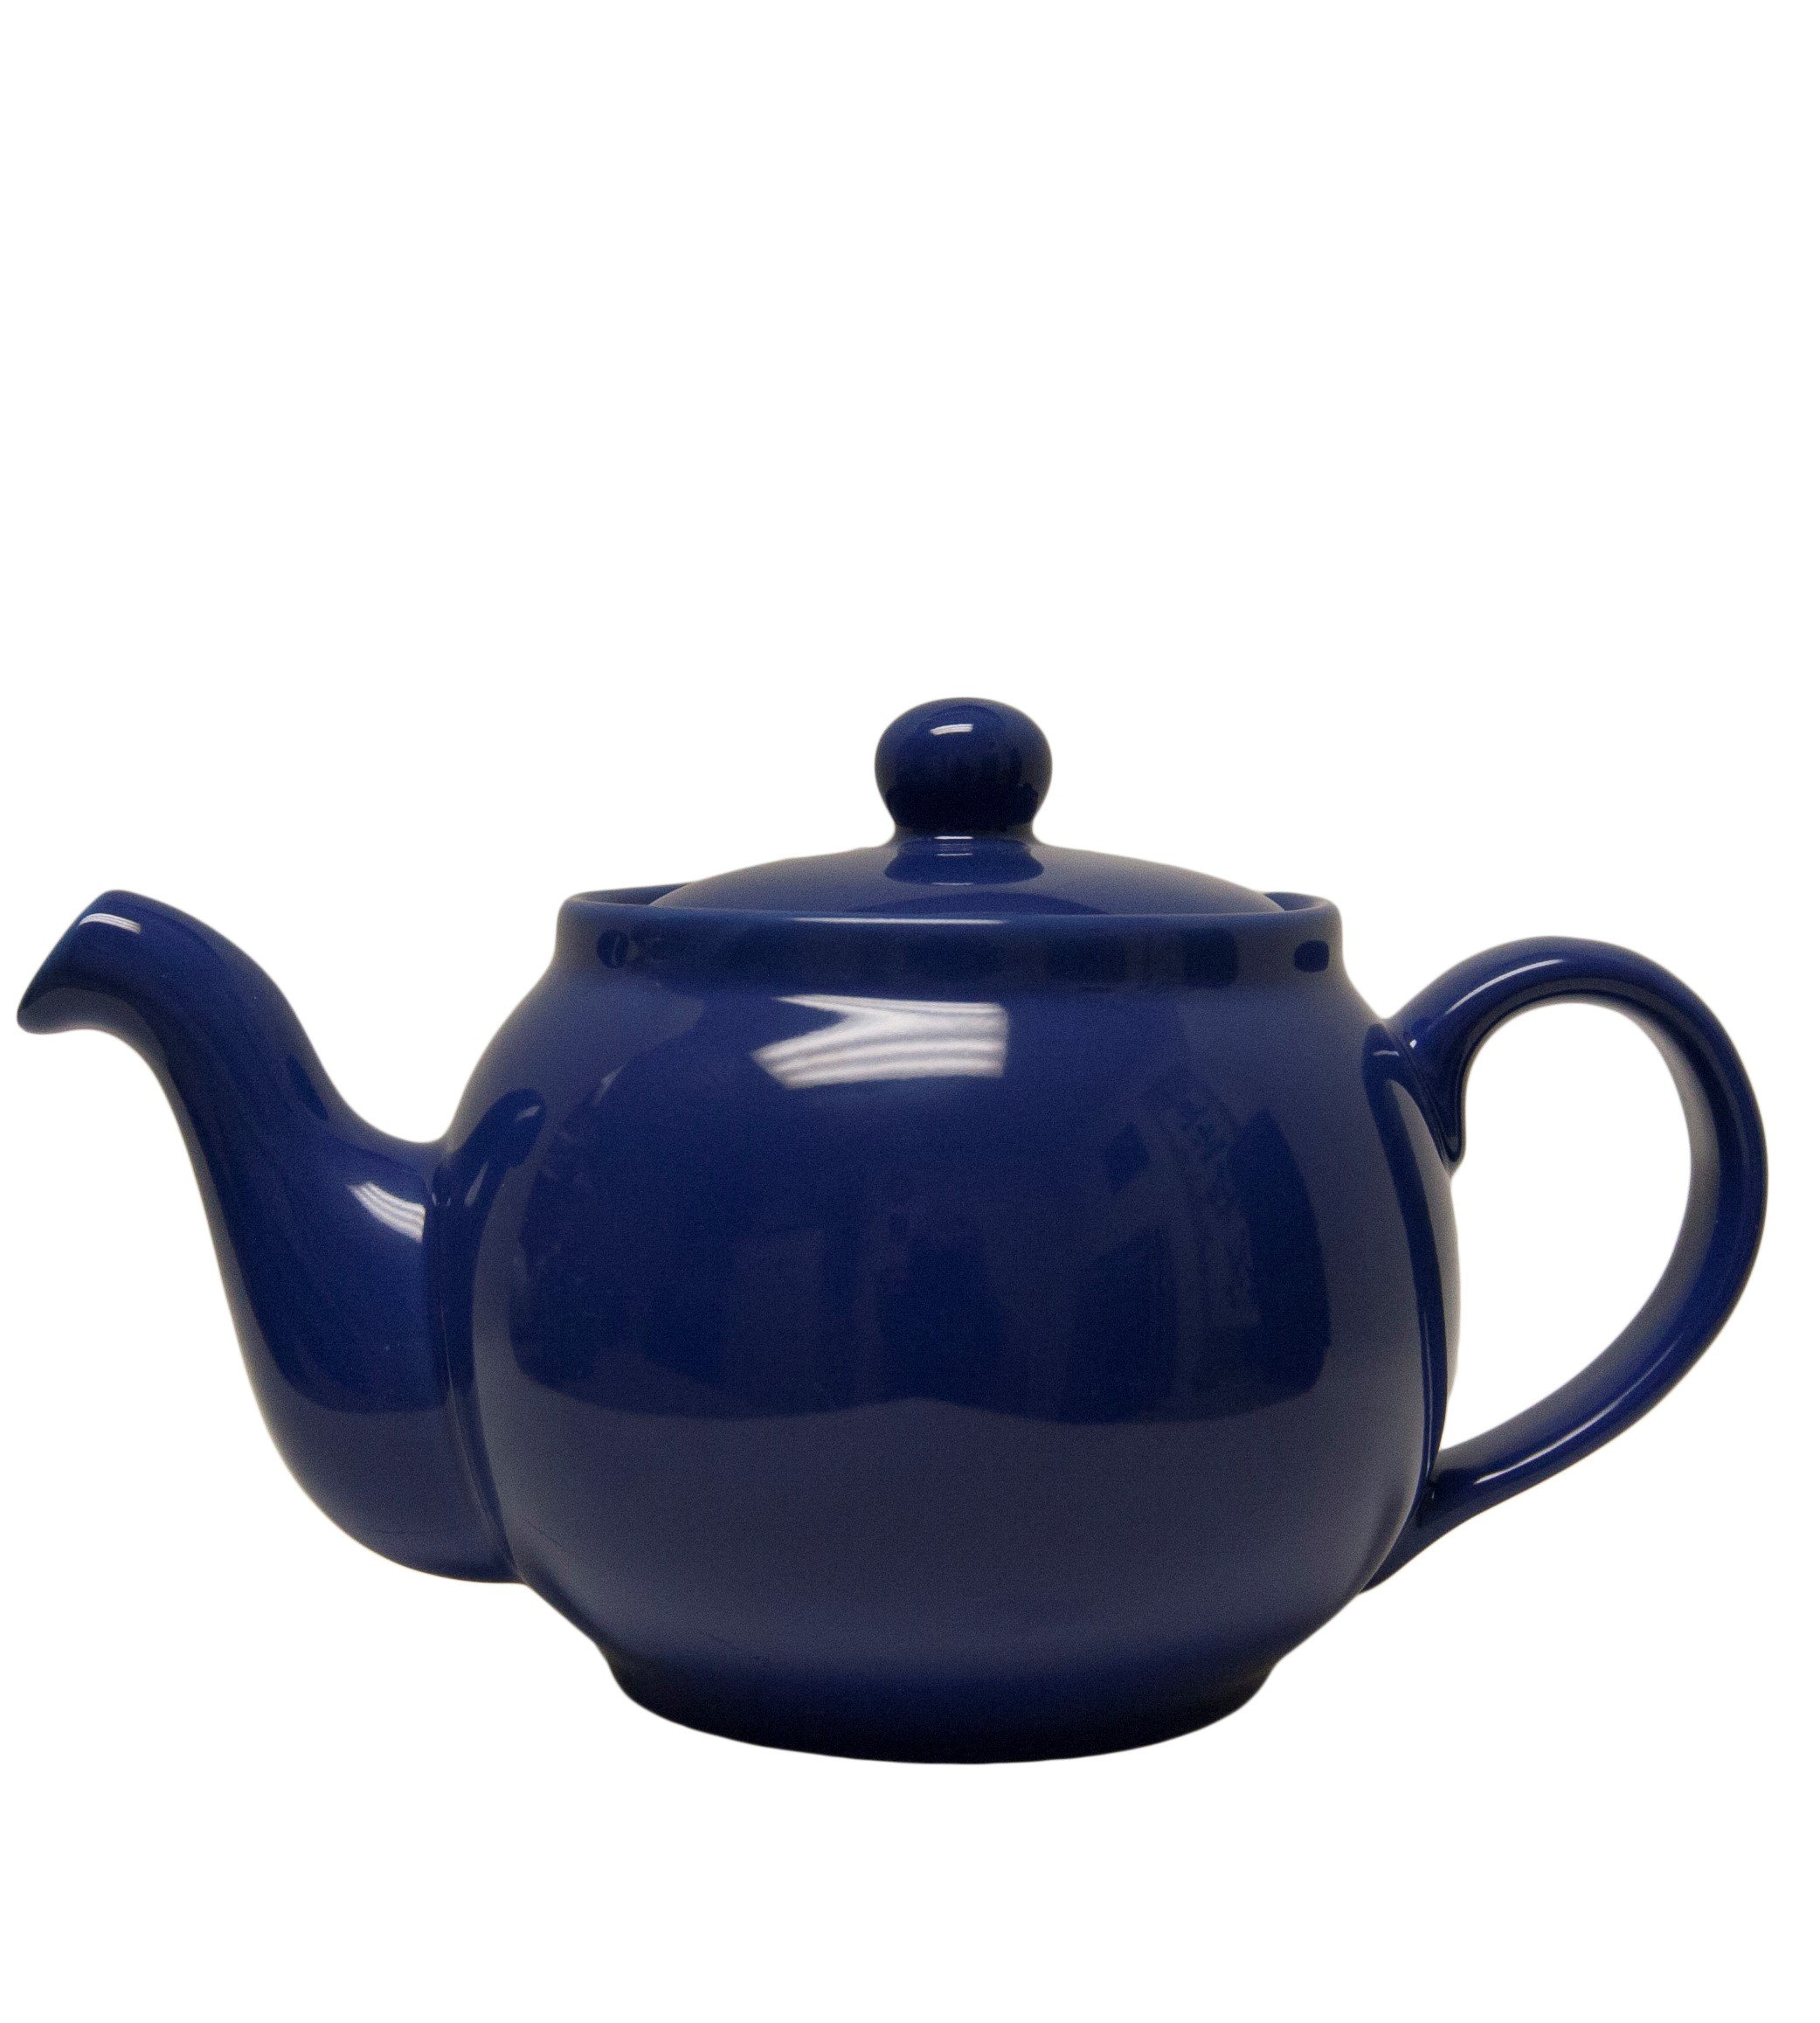 Chatsford Teapot - Blue 24 oz